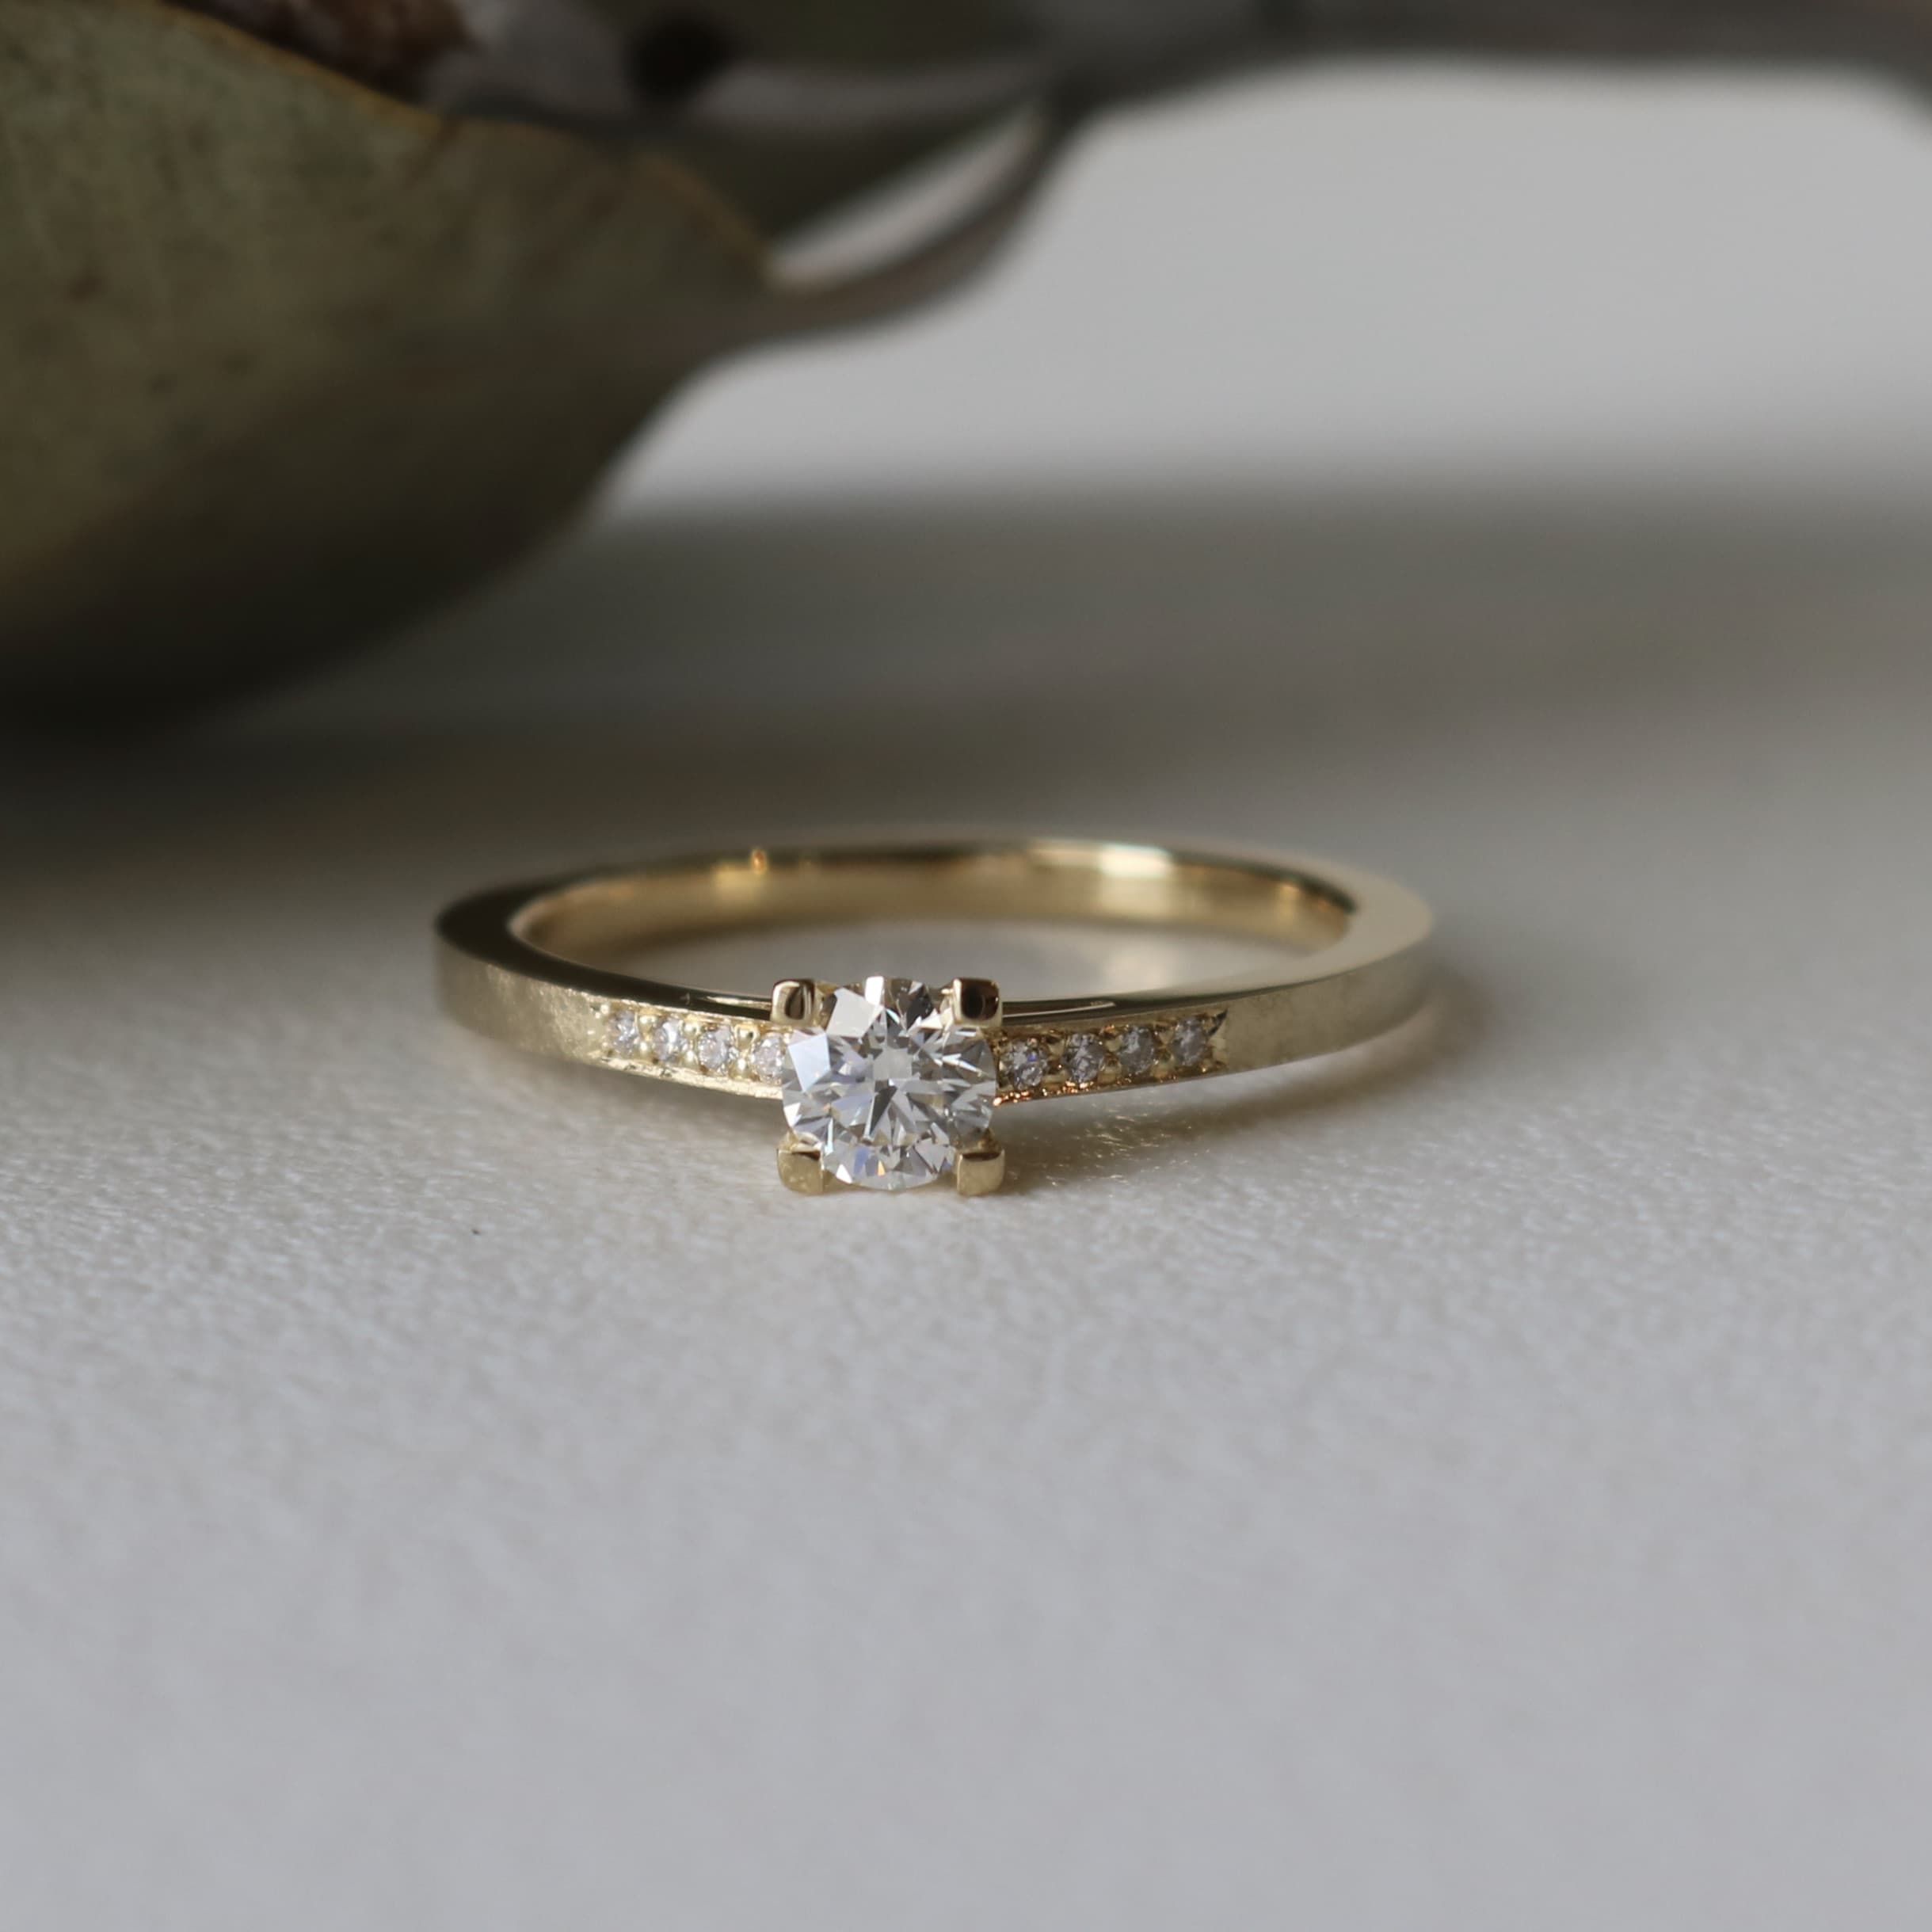 サプライズで選ばれた柔らかな光沢が手に馴染む婚約指輪